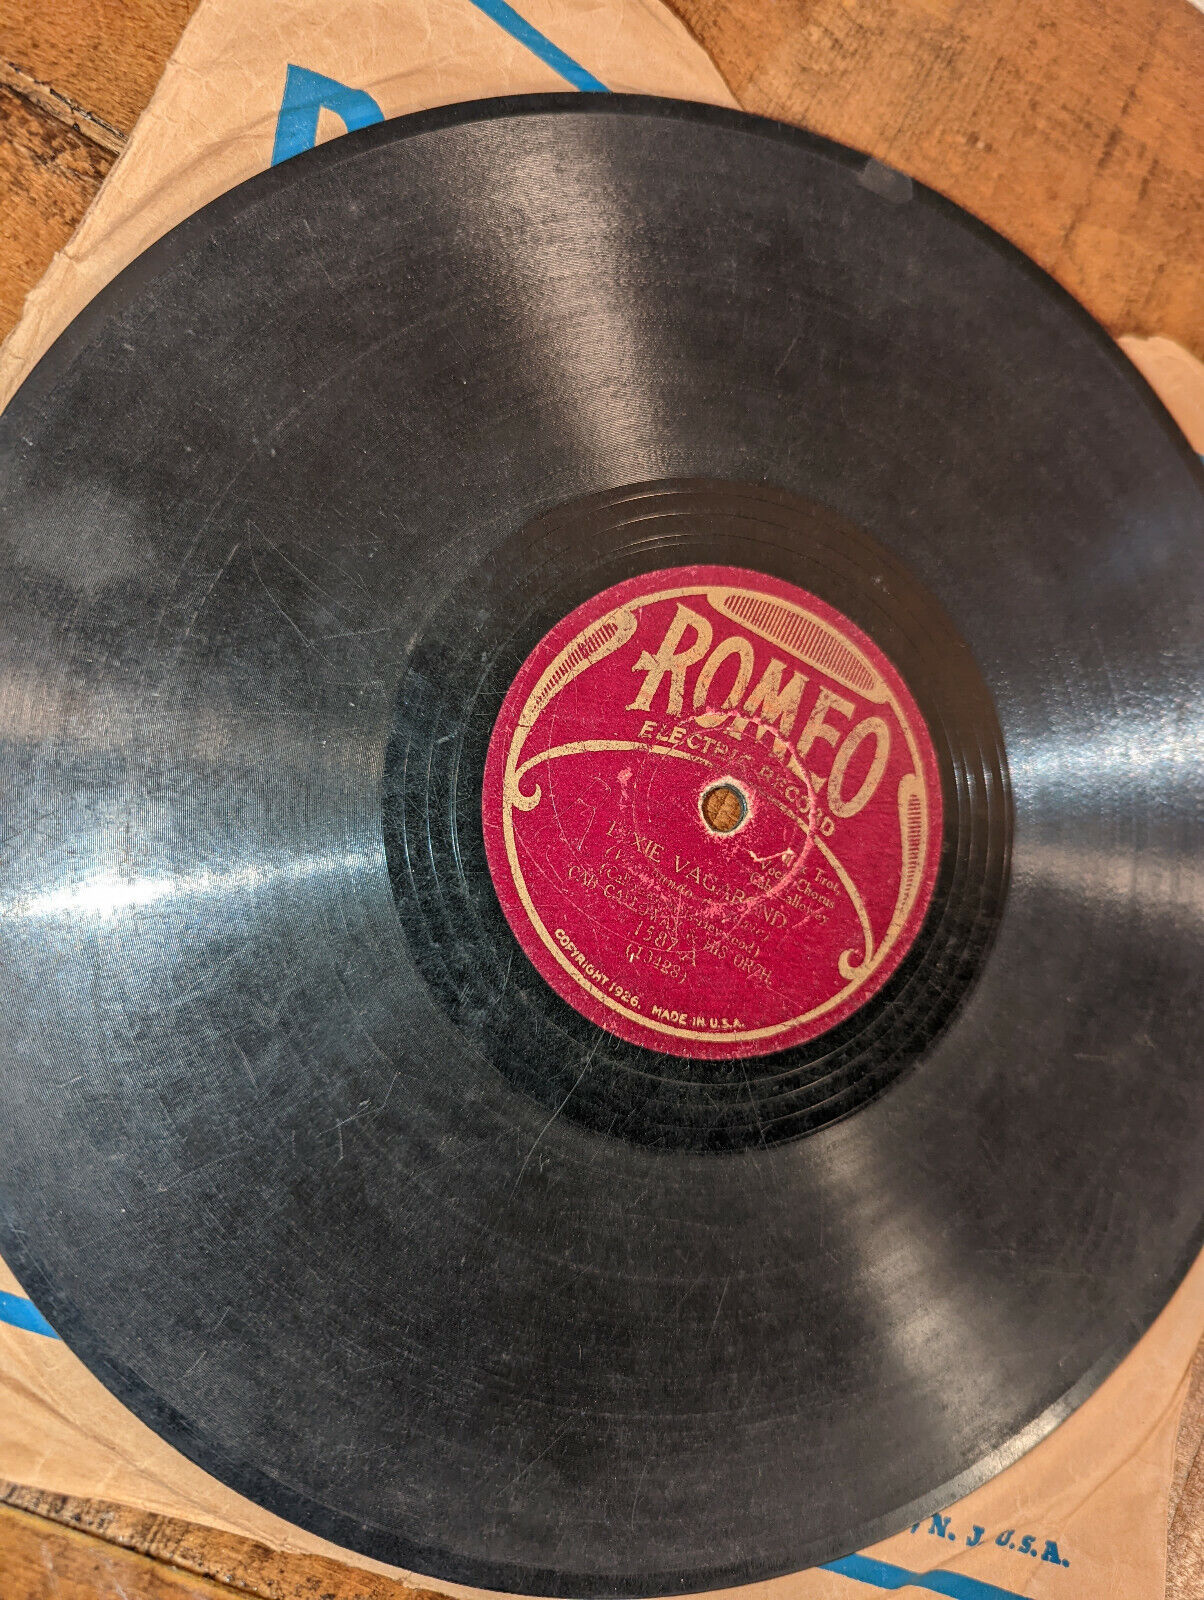 Romeo - So Sweet / Dixie Vagabond 78 RPM Pre-War Jazz Cab Calloway VG